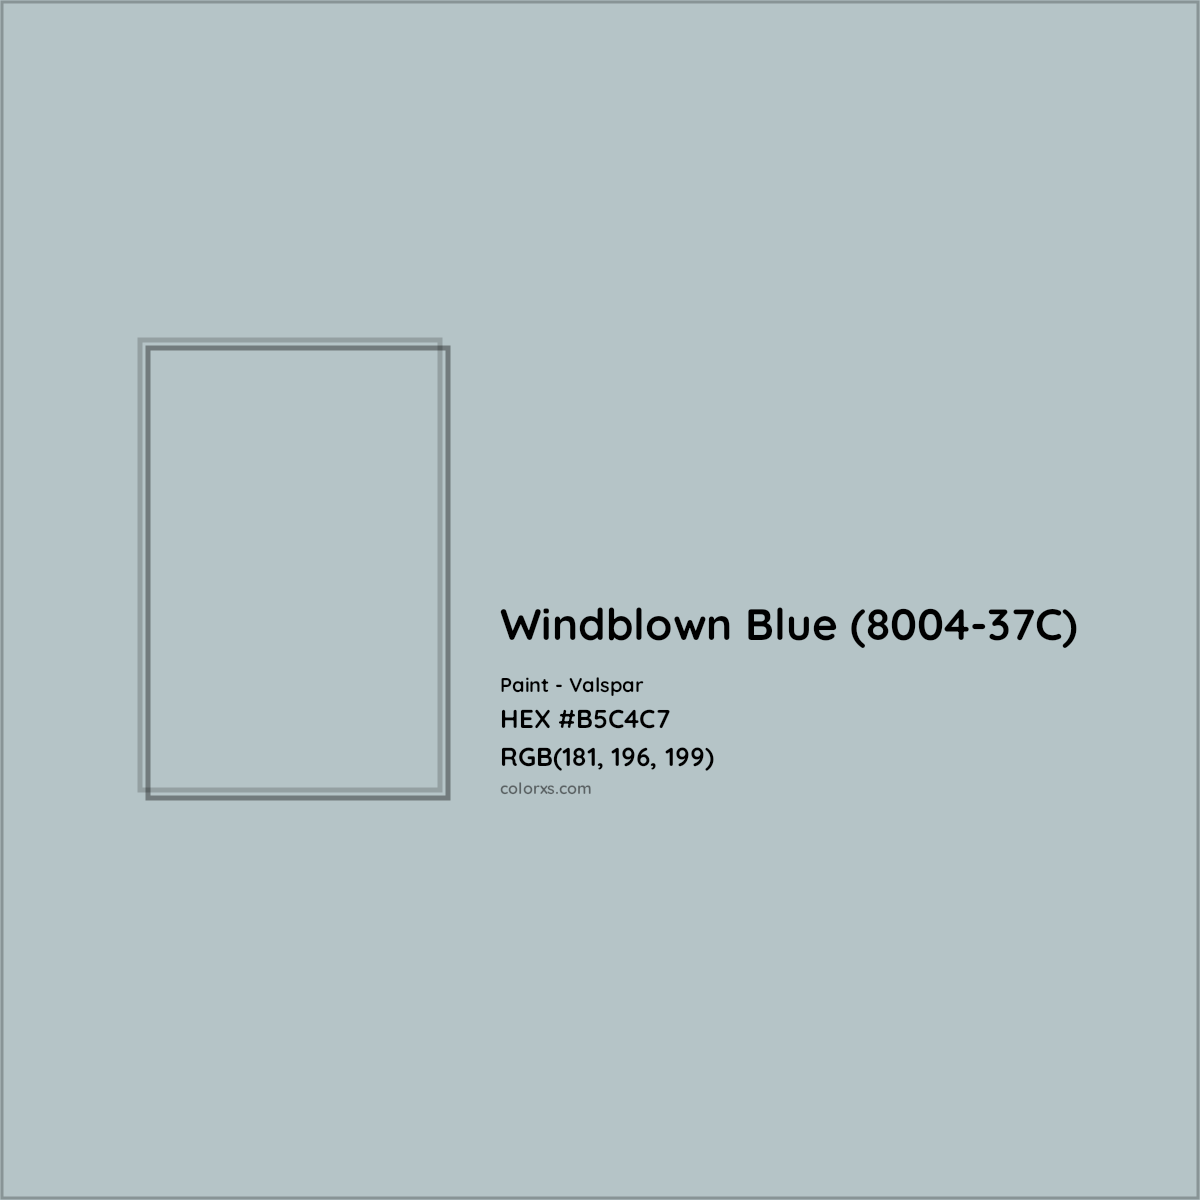 HEX #B5C4C7 Windblown Blue (8004-37C) Paint Valspar - Color Code